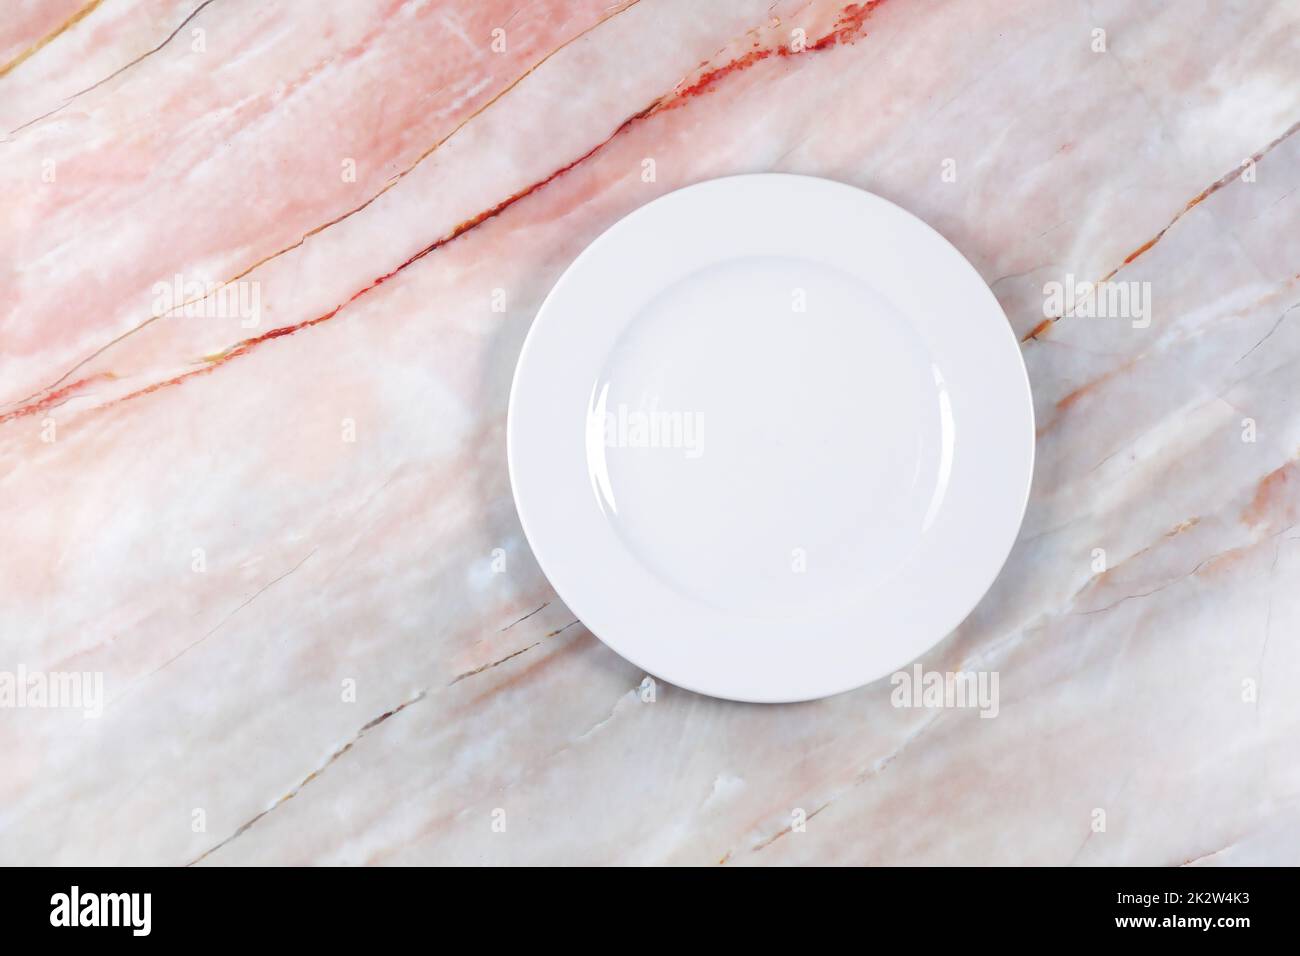 Piatto da pranzo su una superficie di marmo rosa bianco e grigio Foto Stock